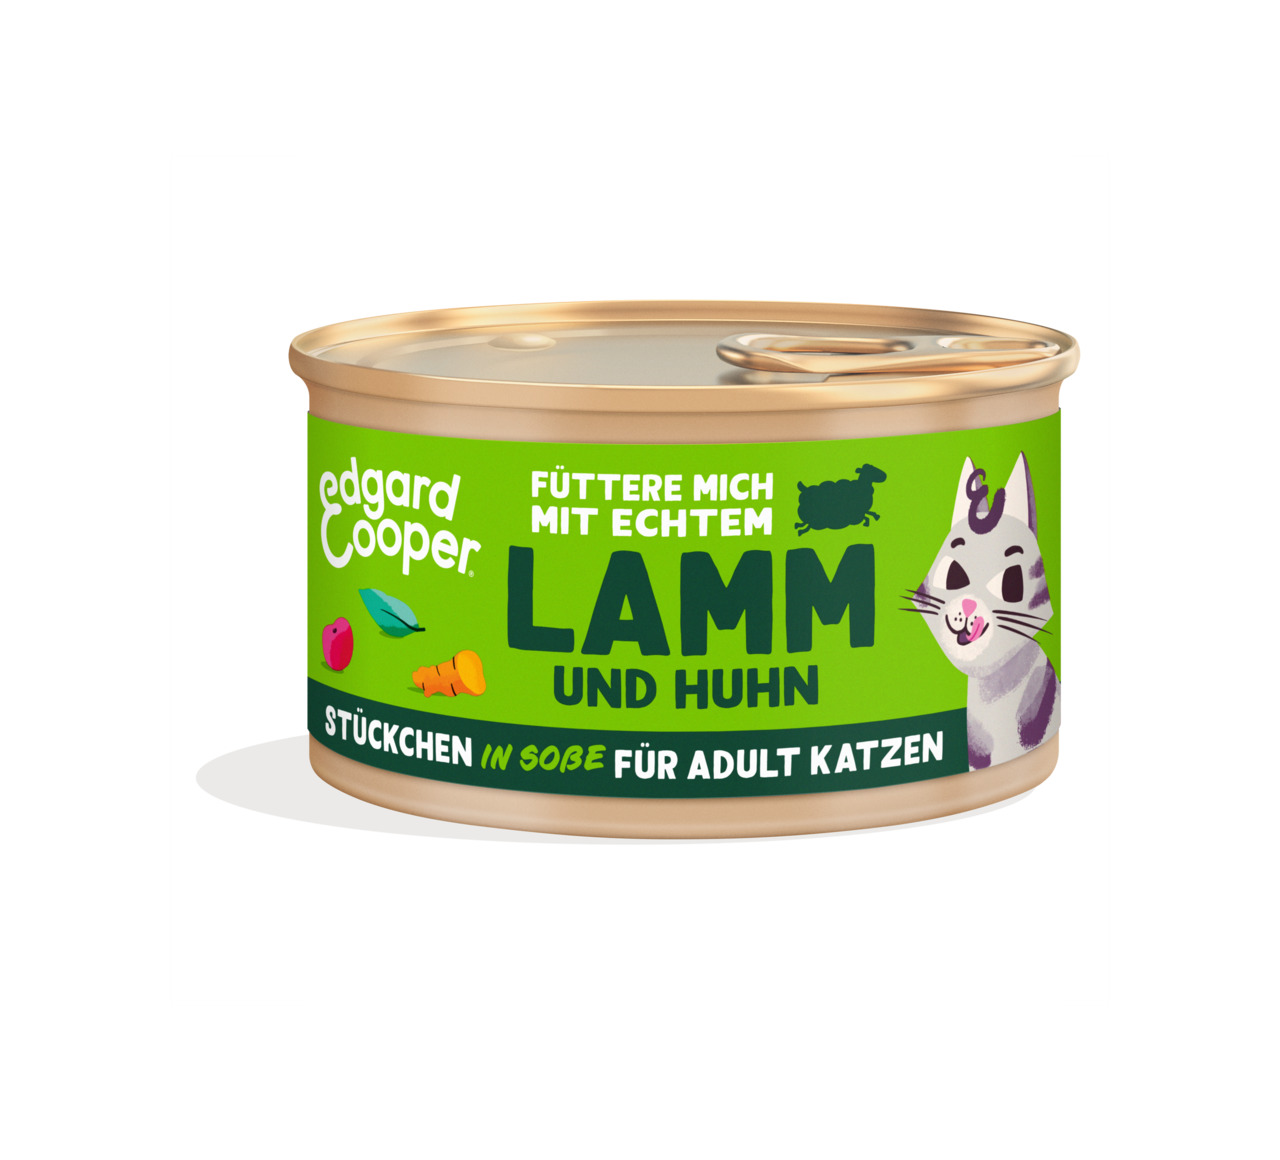 Edgard & Cooper Adult Lamm & Huhn Stückchen in Soße Katzen Nassfutter 85 g